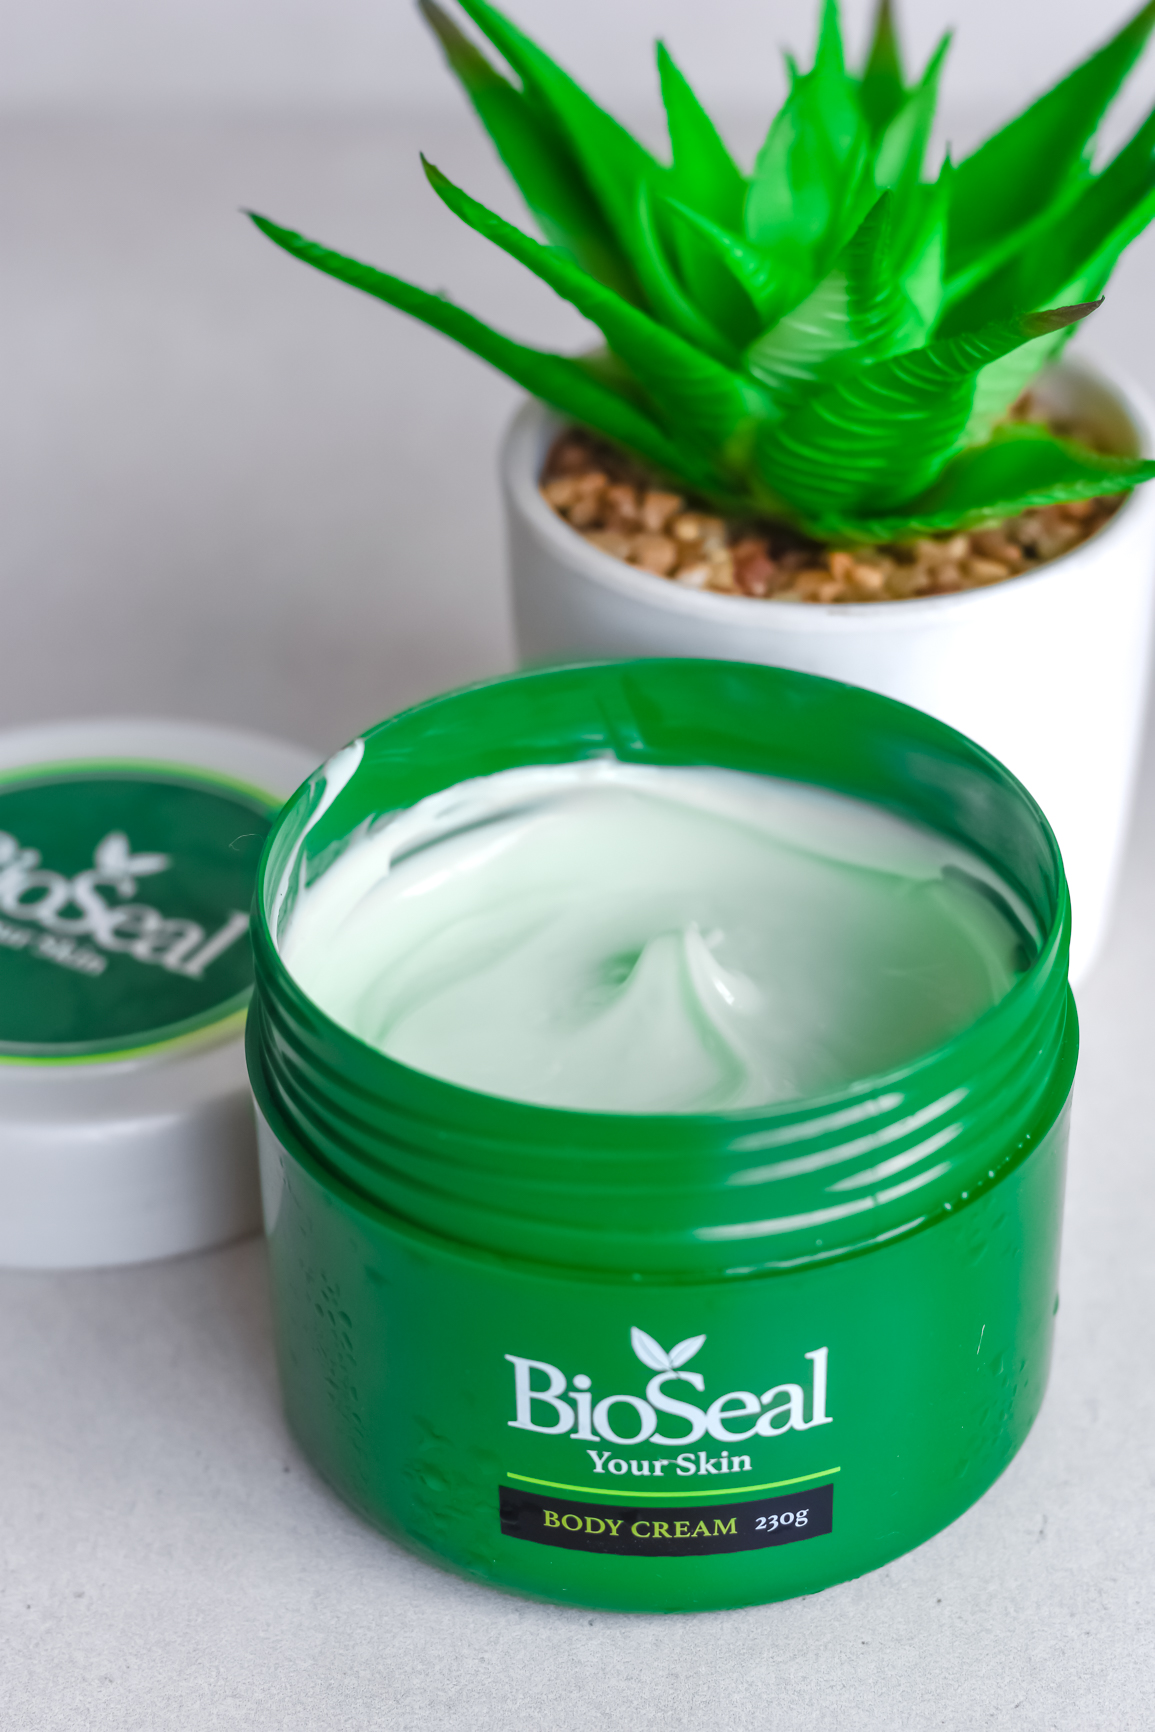 Bioseal for sensitive skin